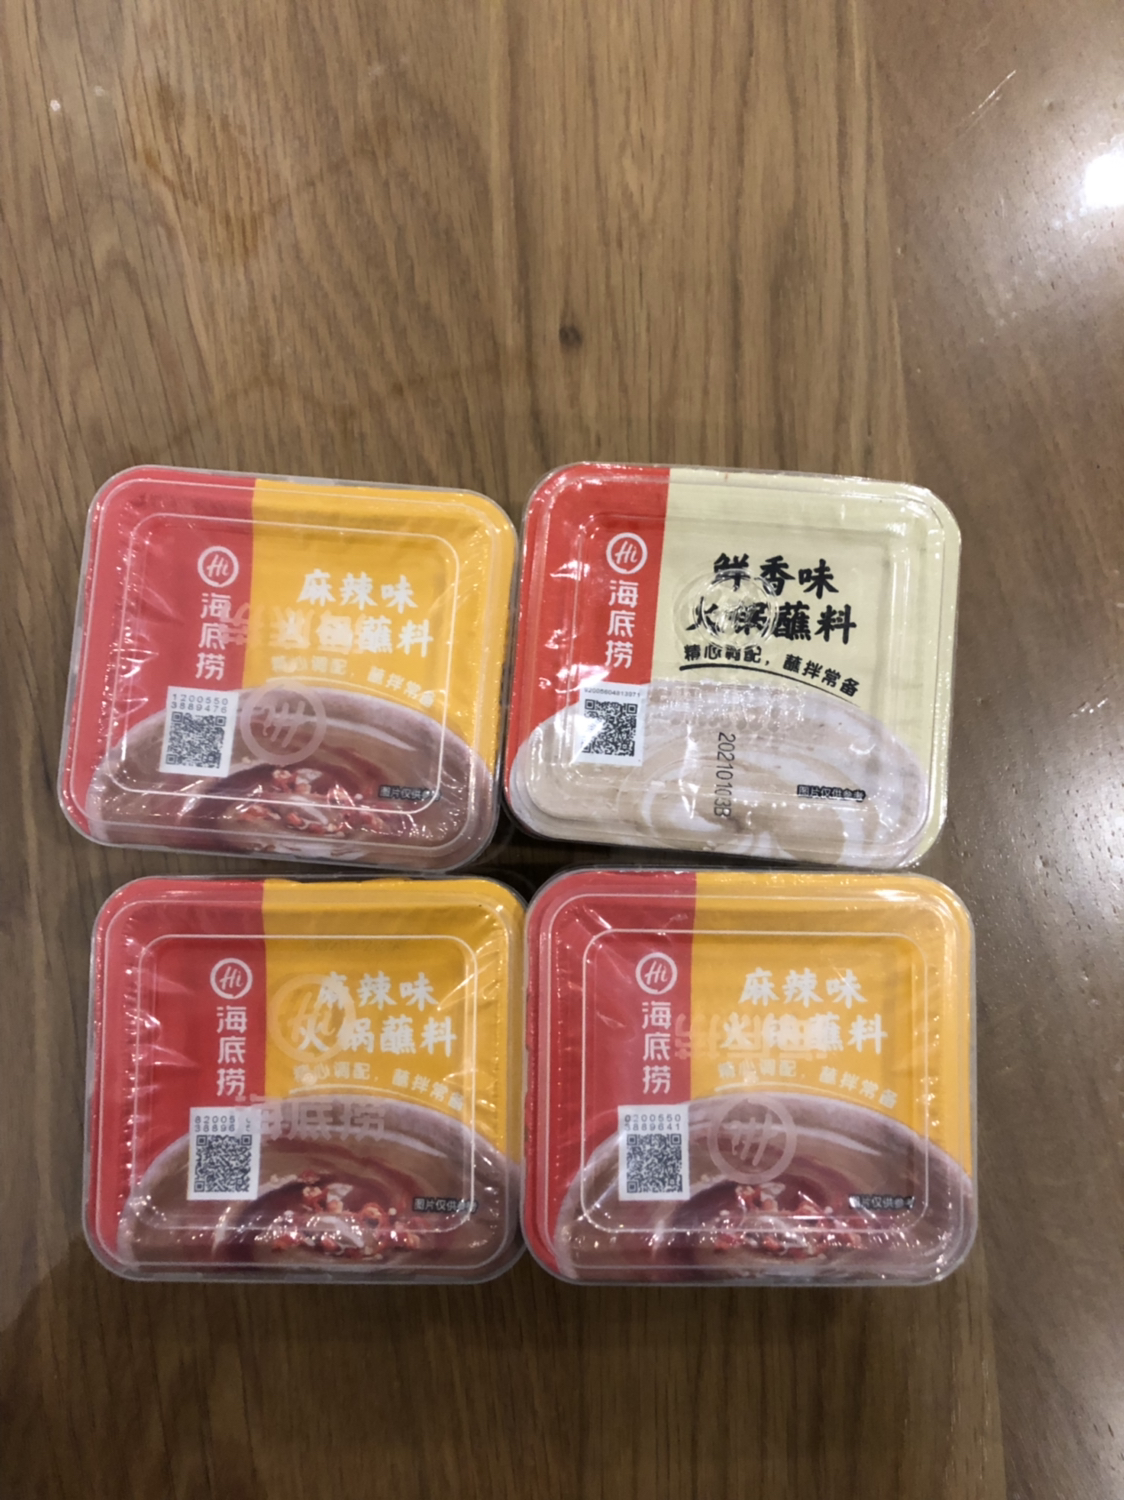 海底捞麻辣味火锅蘸料100g*3 盒装 调味品调味料 火锅伴侣 一料多用